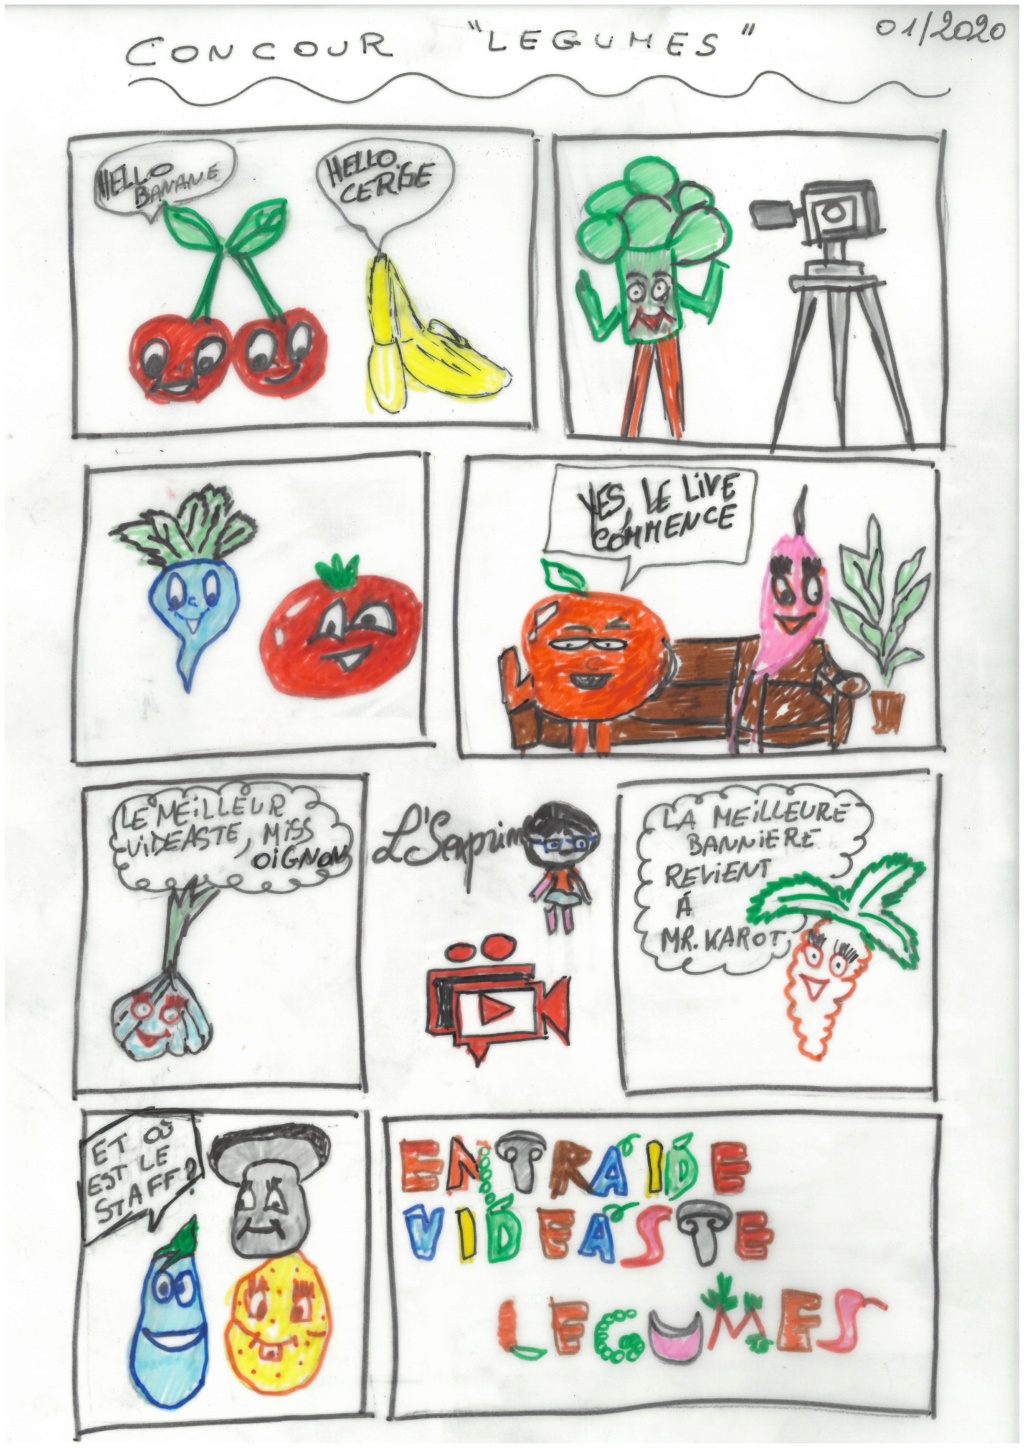 [Concours]  Votre plus belle création de "Légume" - Page 3 Legume13